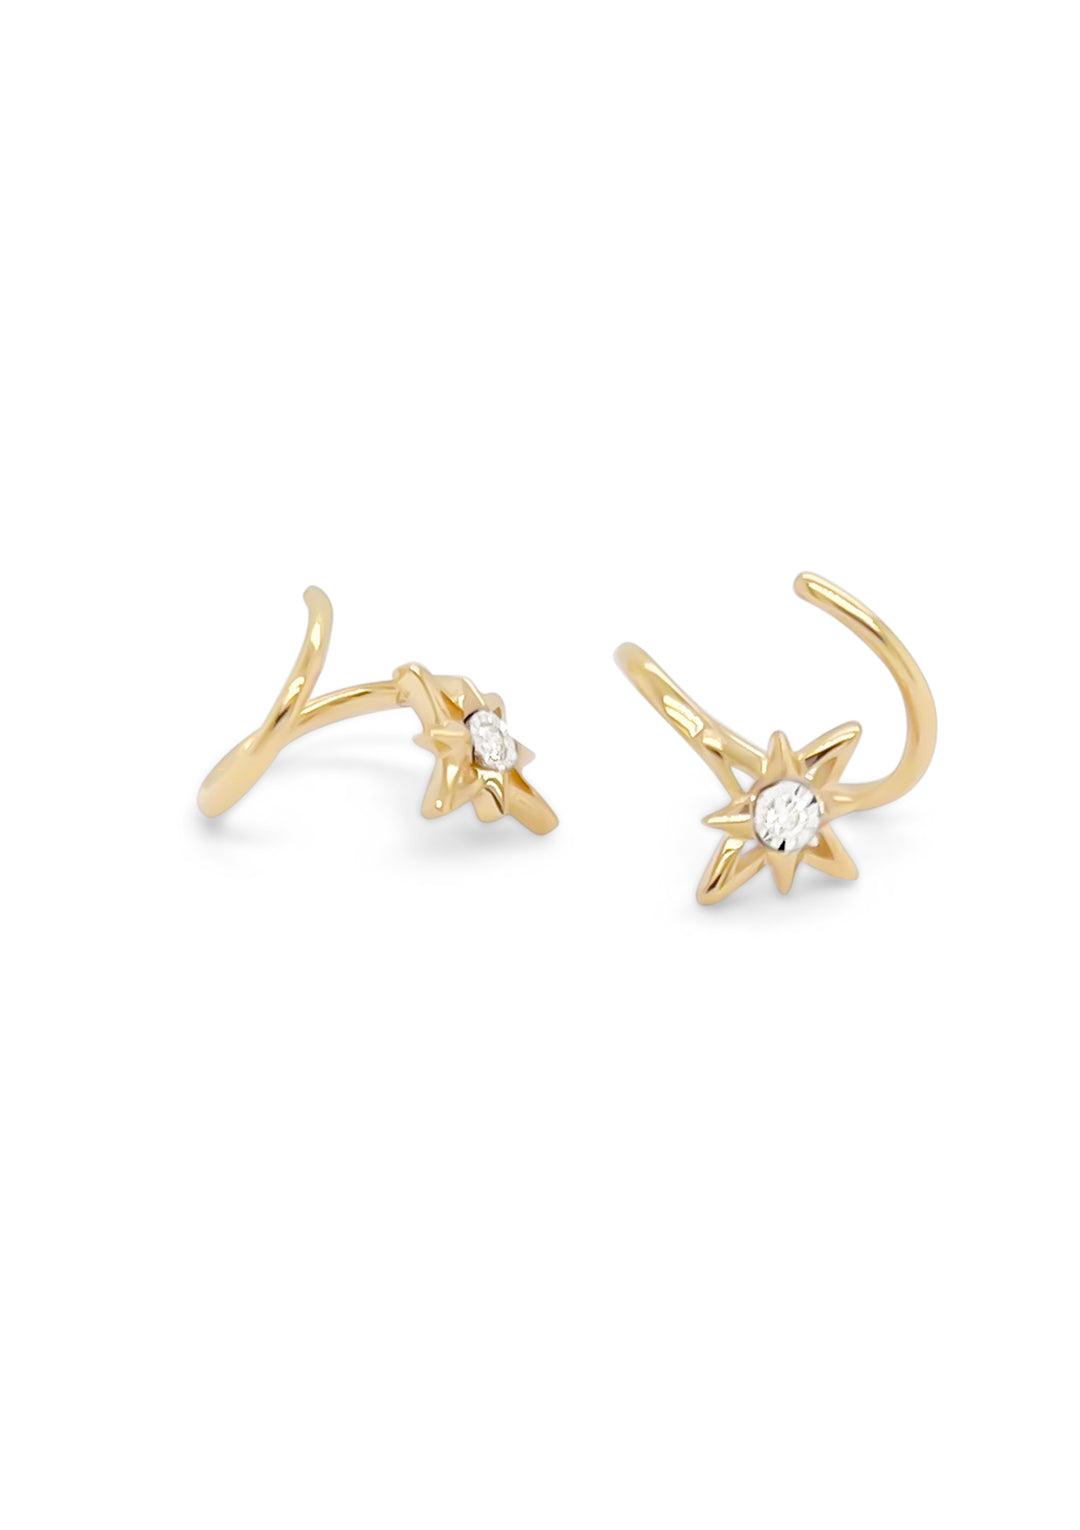 14K Yellow Gold Diamond Twist Star Earrings